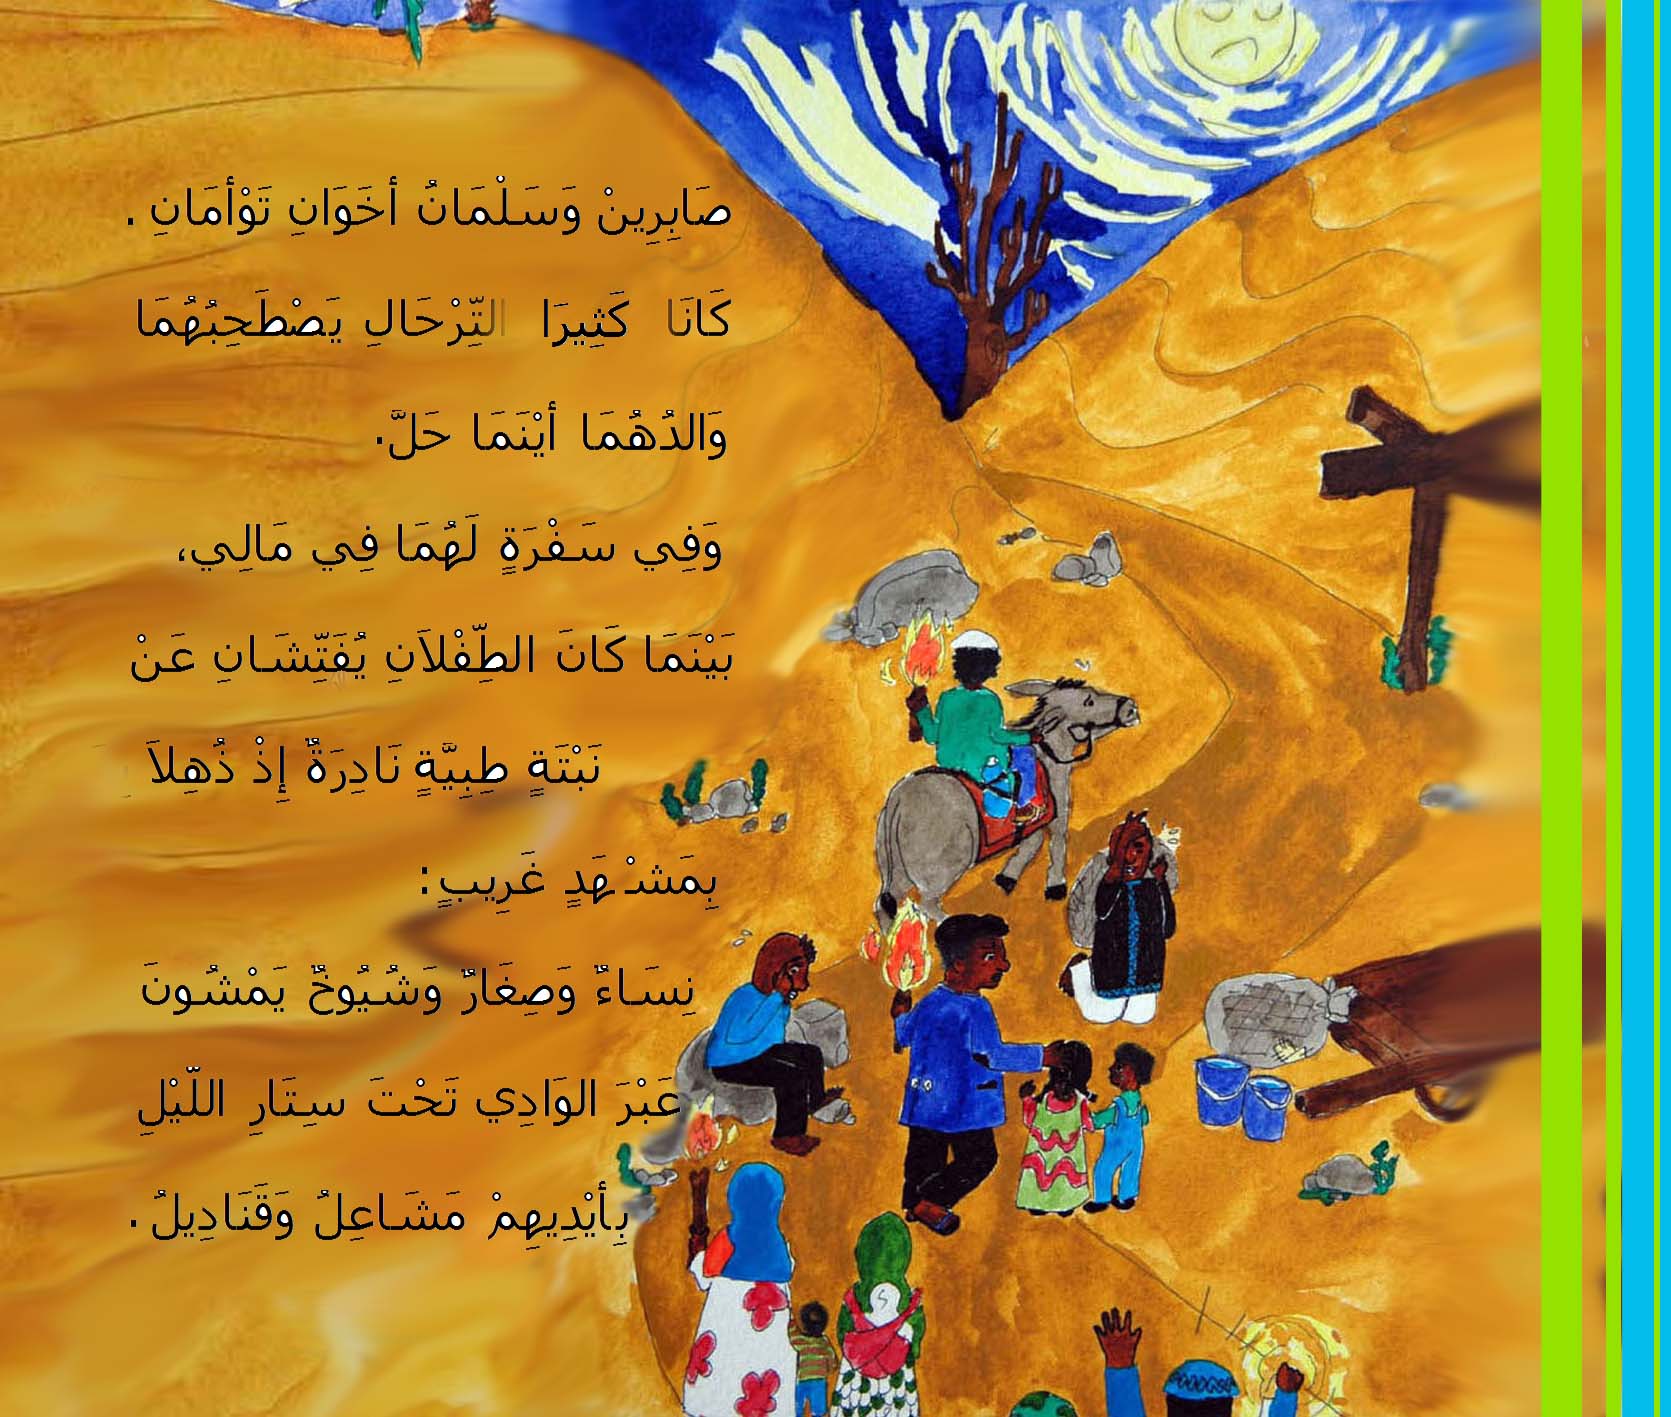 من قصص الأطفال المصورة - حكاية: أرض الله الواسعة - من المجموعة القصصية: سلسلة زهرة الثالوث - رسوم وتصميم الكاتبة: كريمة الغربي -  موقع (كيدزوون | Kidzooon)